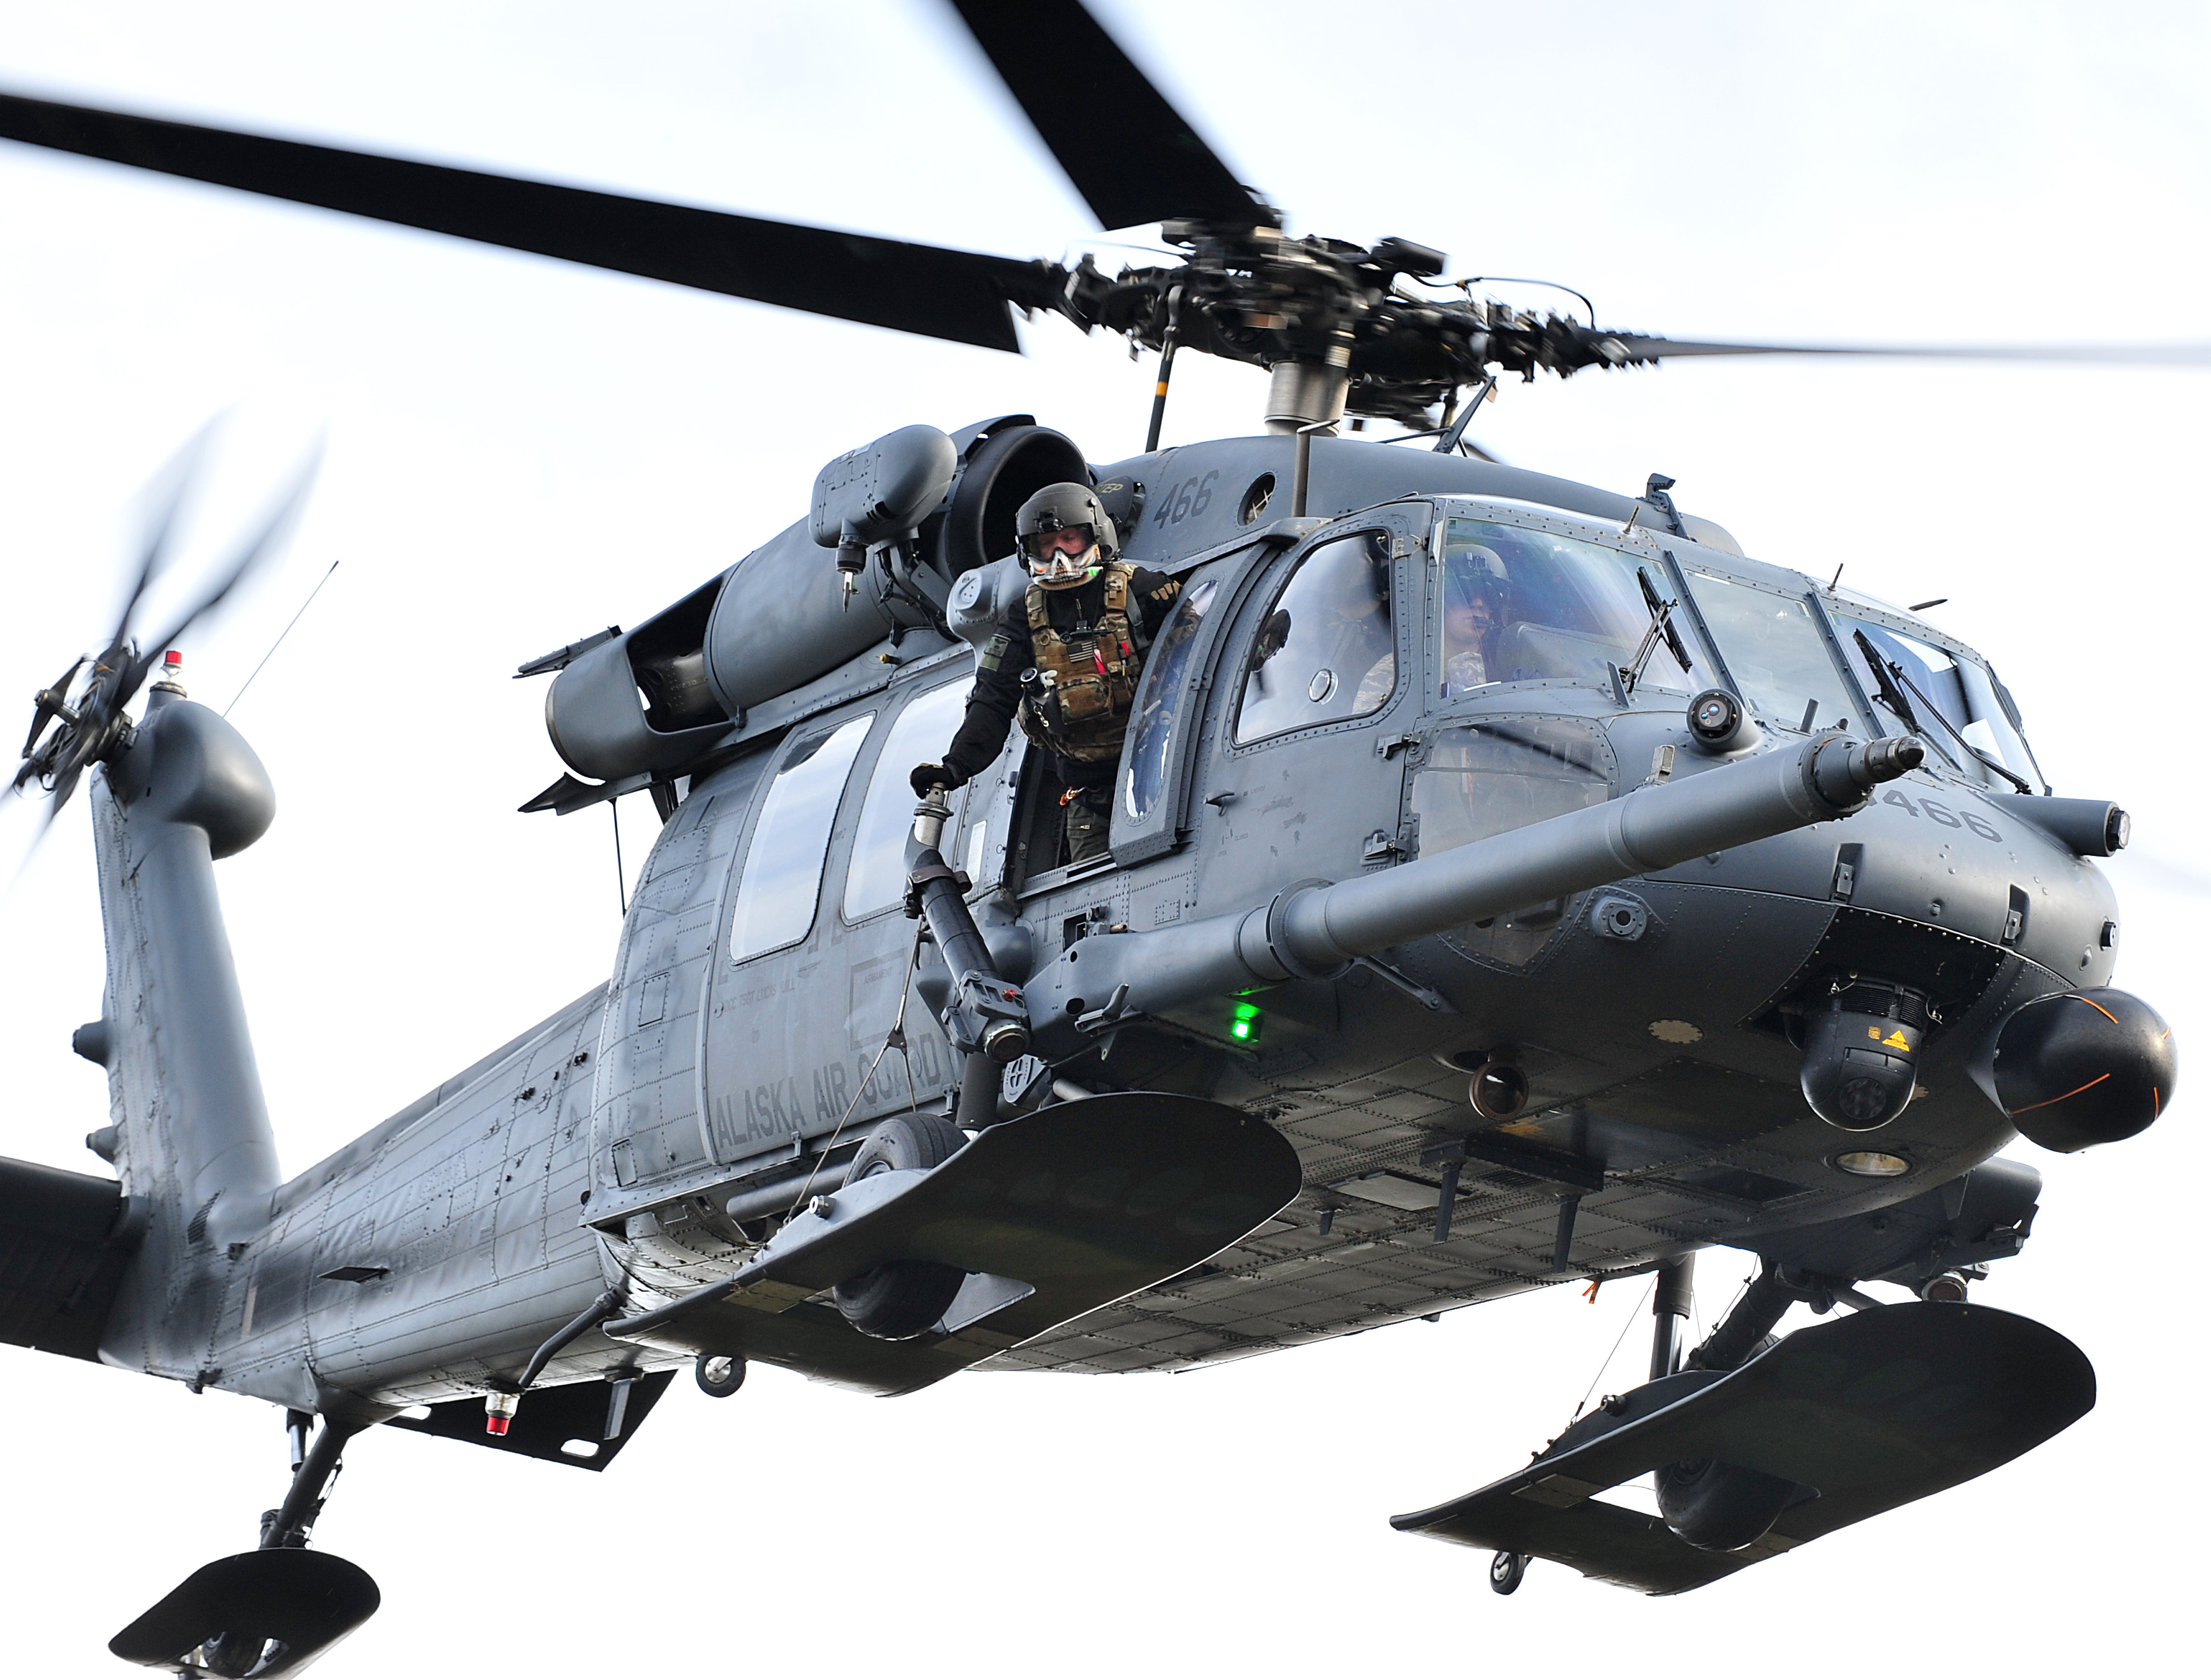 Американские военные вертолеты. Вертолет HH-60g Pave Hawk. Hh60 Black Hawk. HH-60 Pave Hawk. MH-60g Pave Hawk.